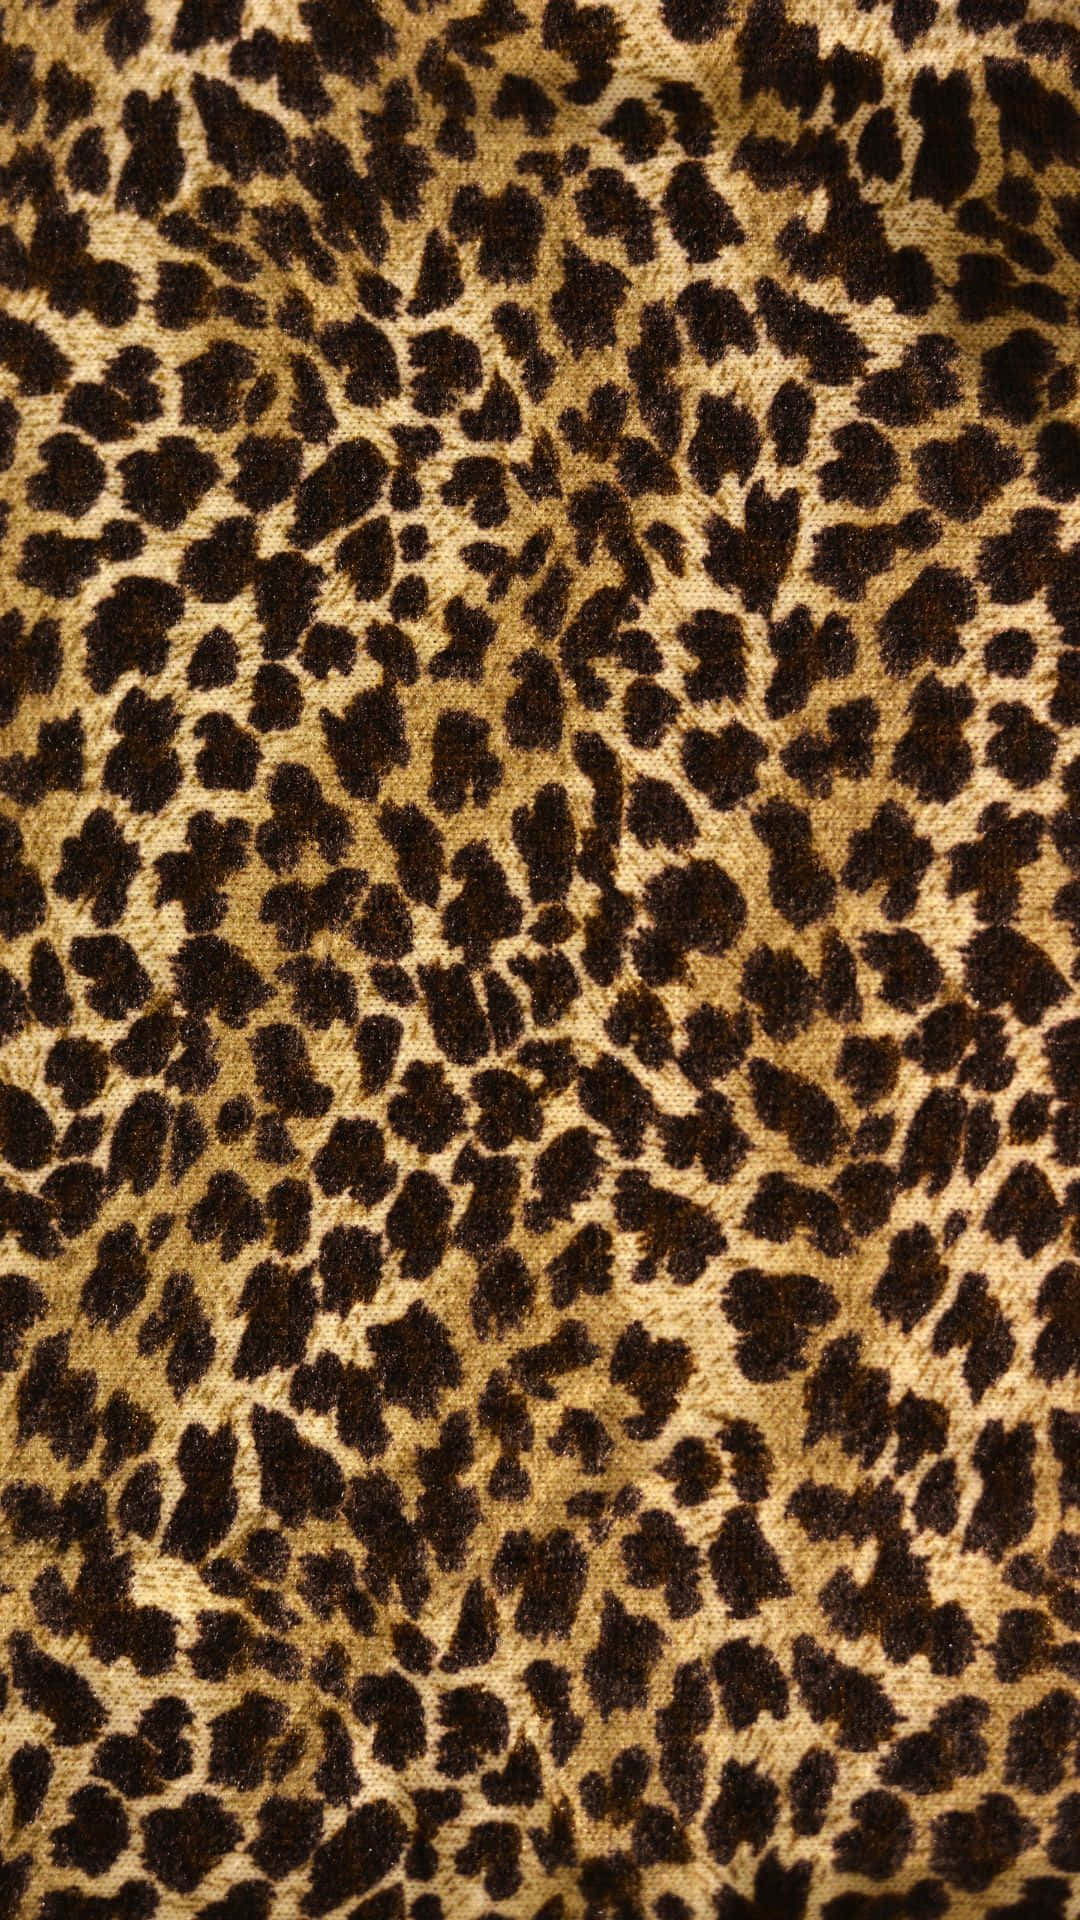 Ennärbild Av Ett Leopardmönstrat Tyg